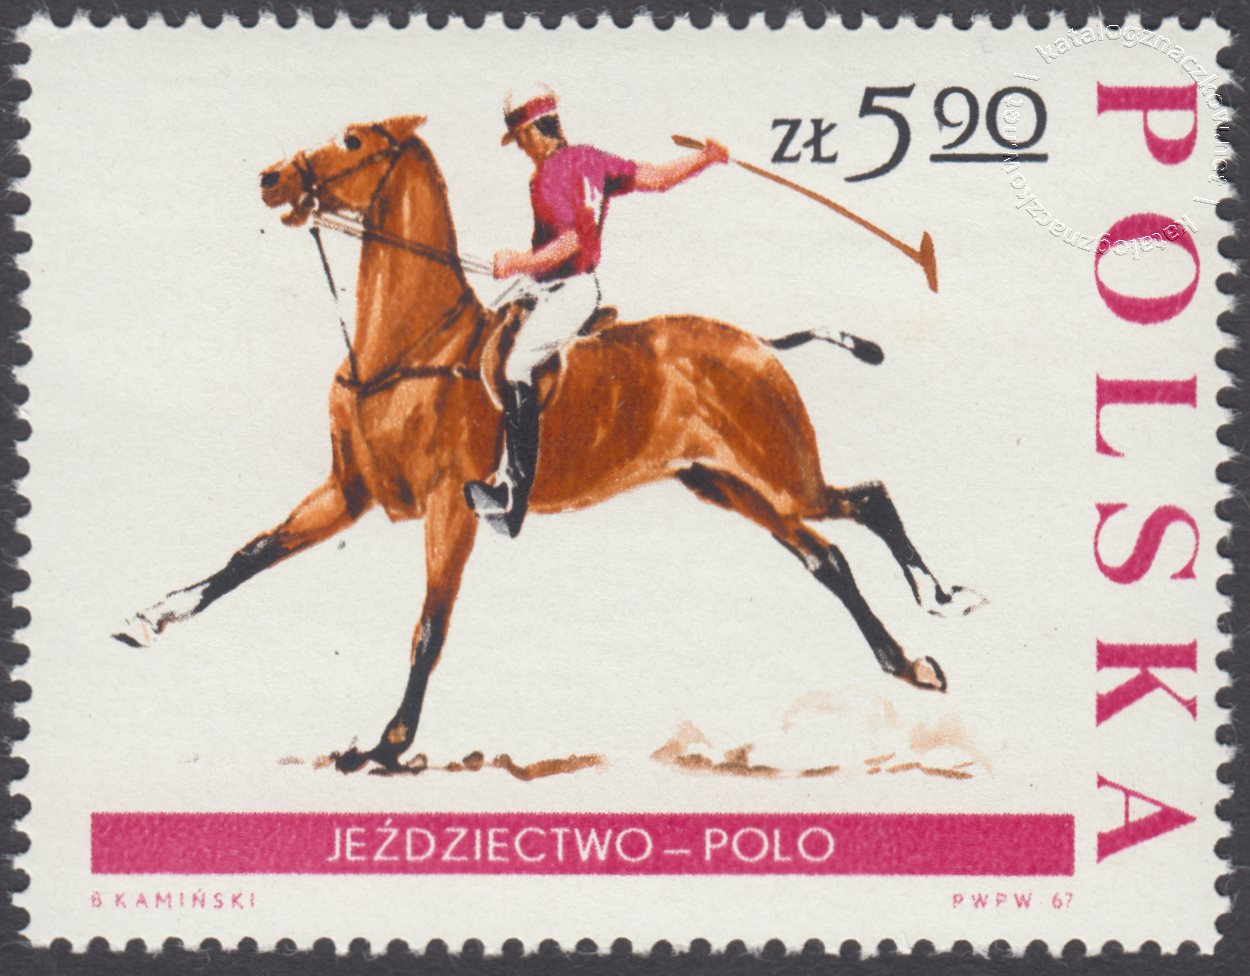 Jeździectwo znaczek nr 1597